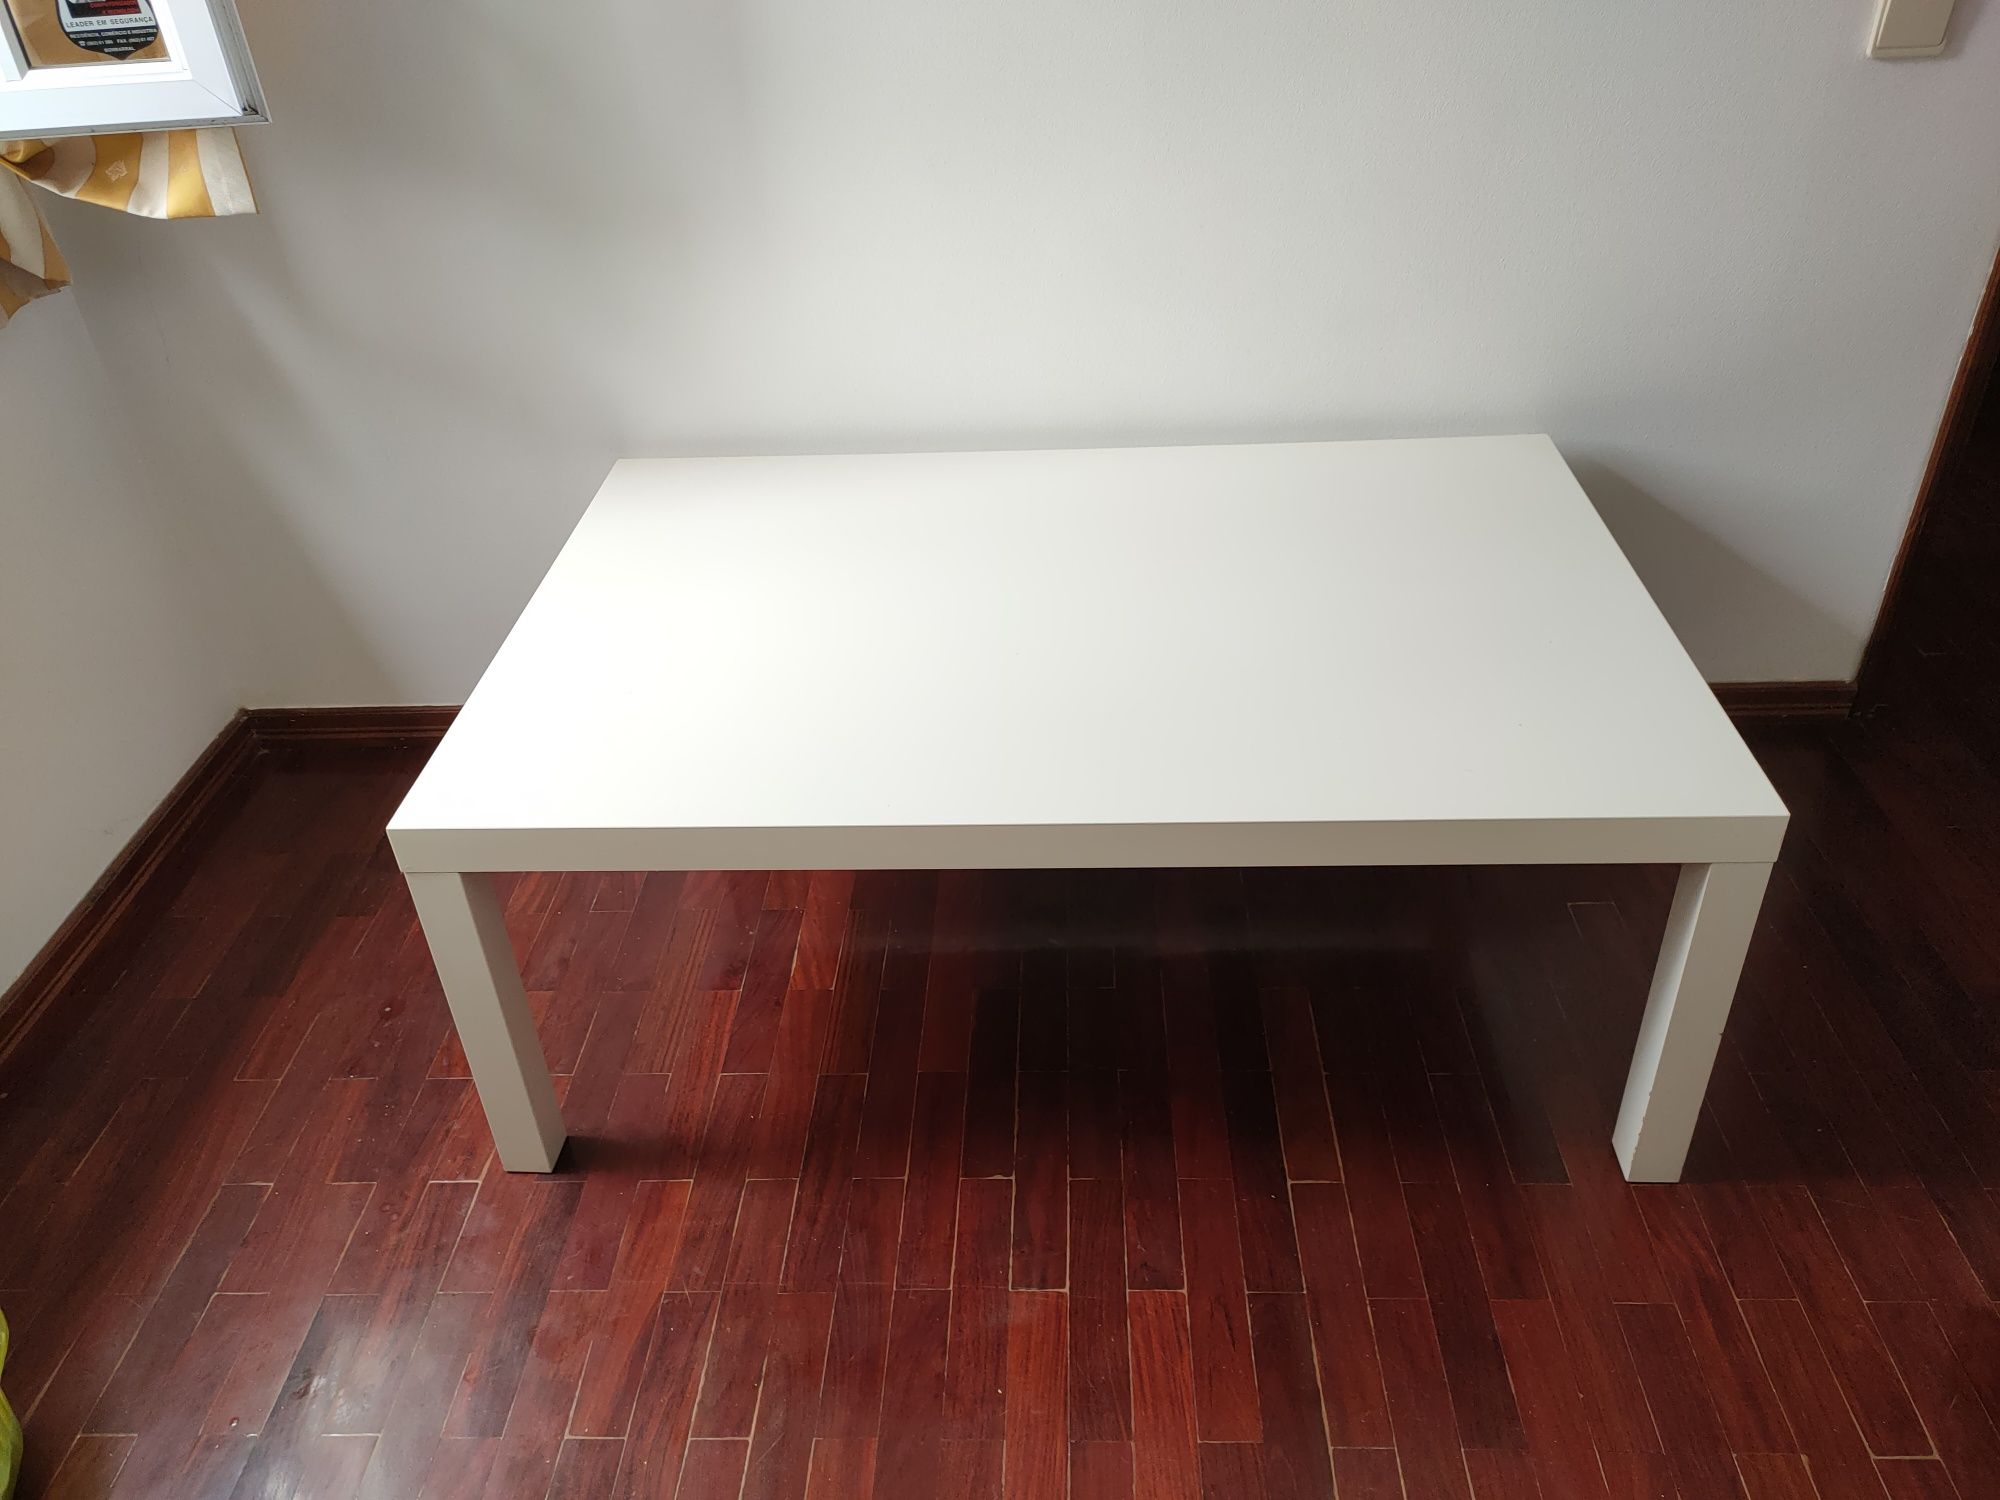 Mesa de centro usada em boas condições IKEA 1,18x0,73